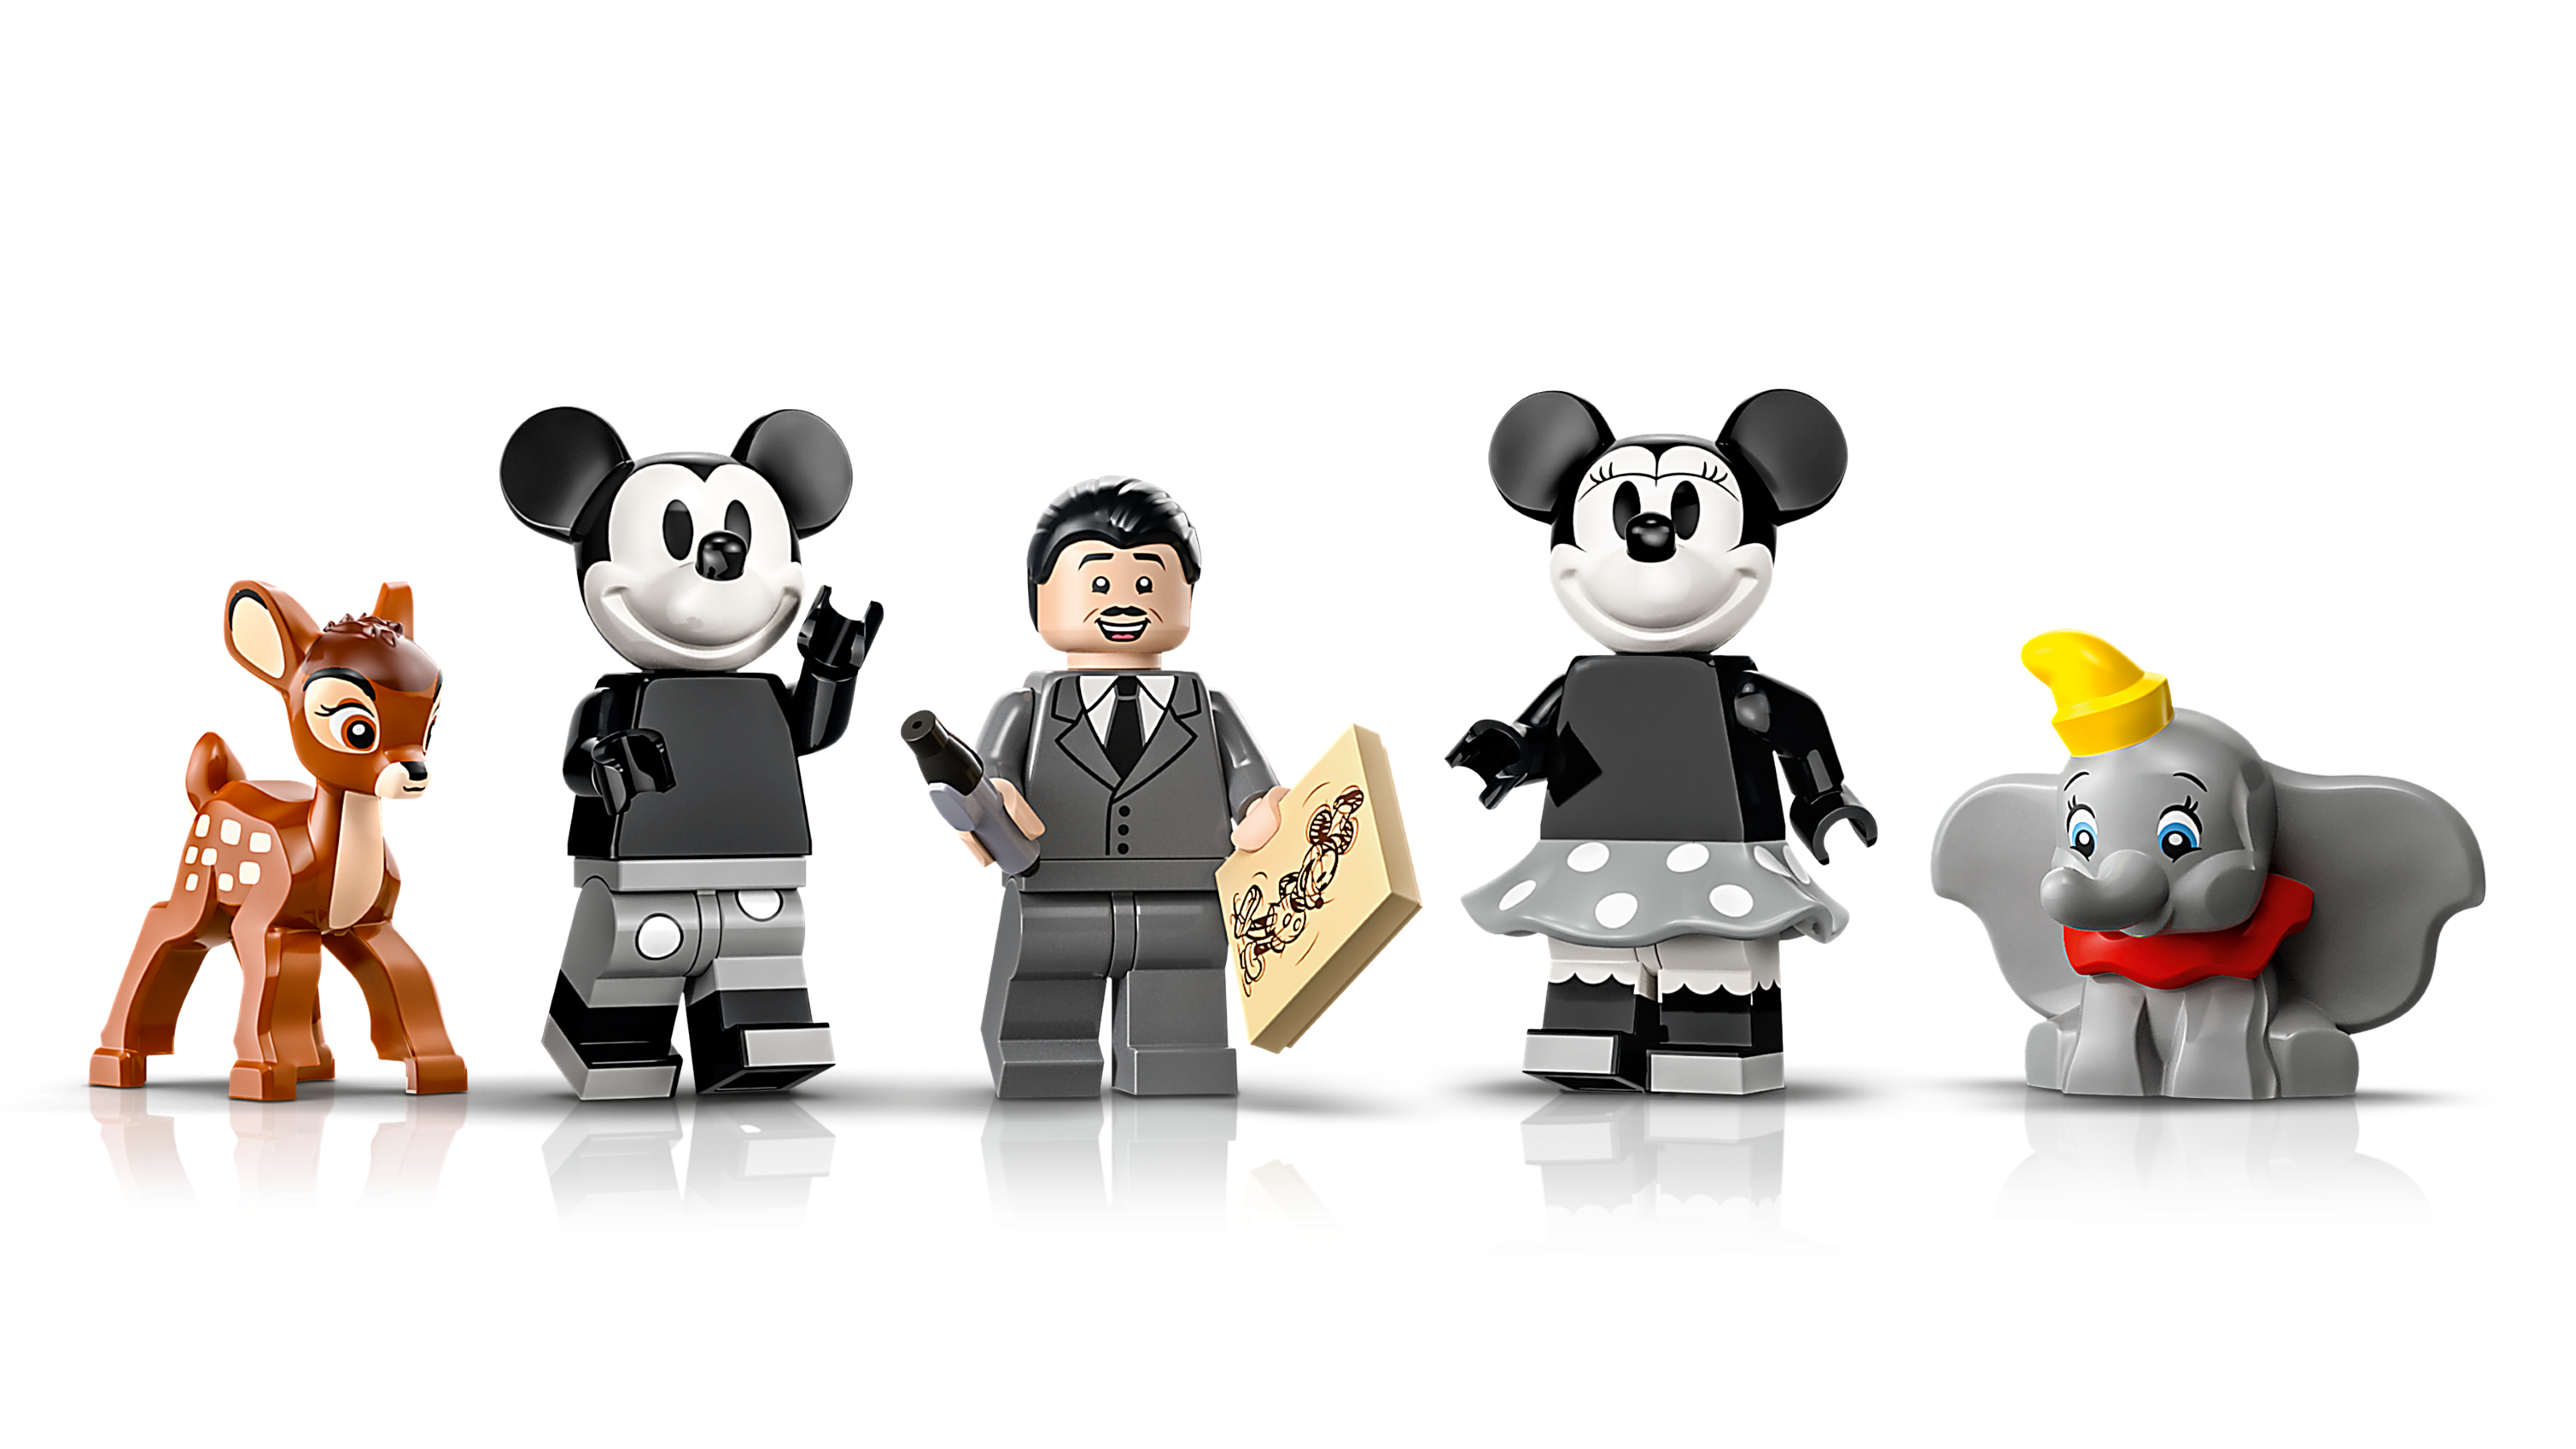 LEGO Disney 100 43230 Walt Disney Camera Rumoured For September 2023